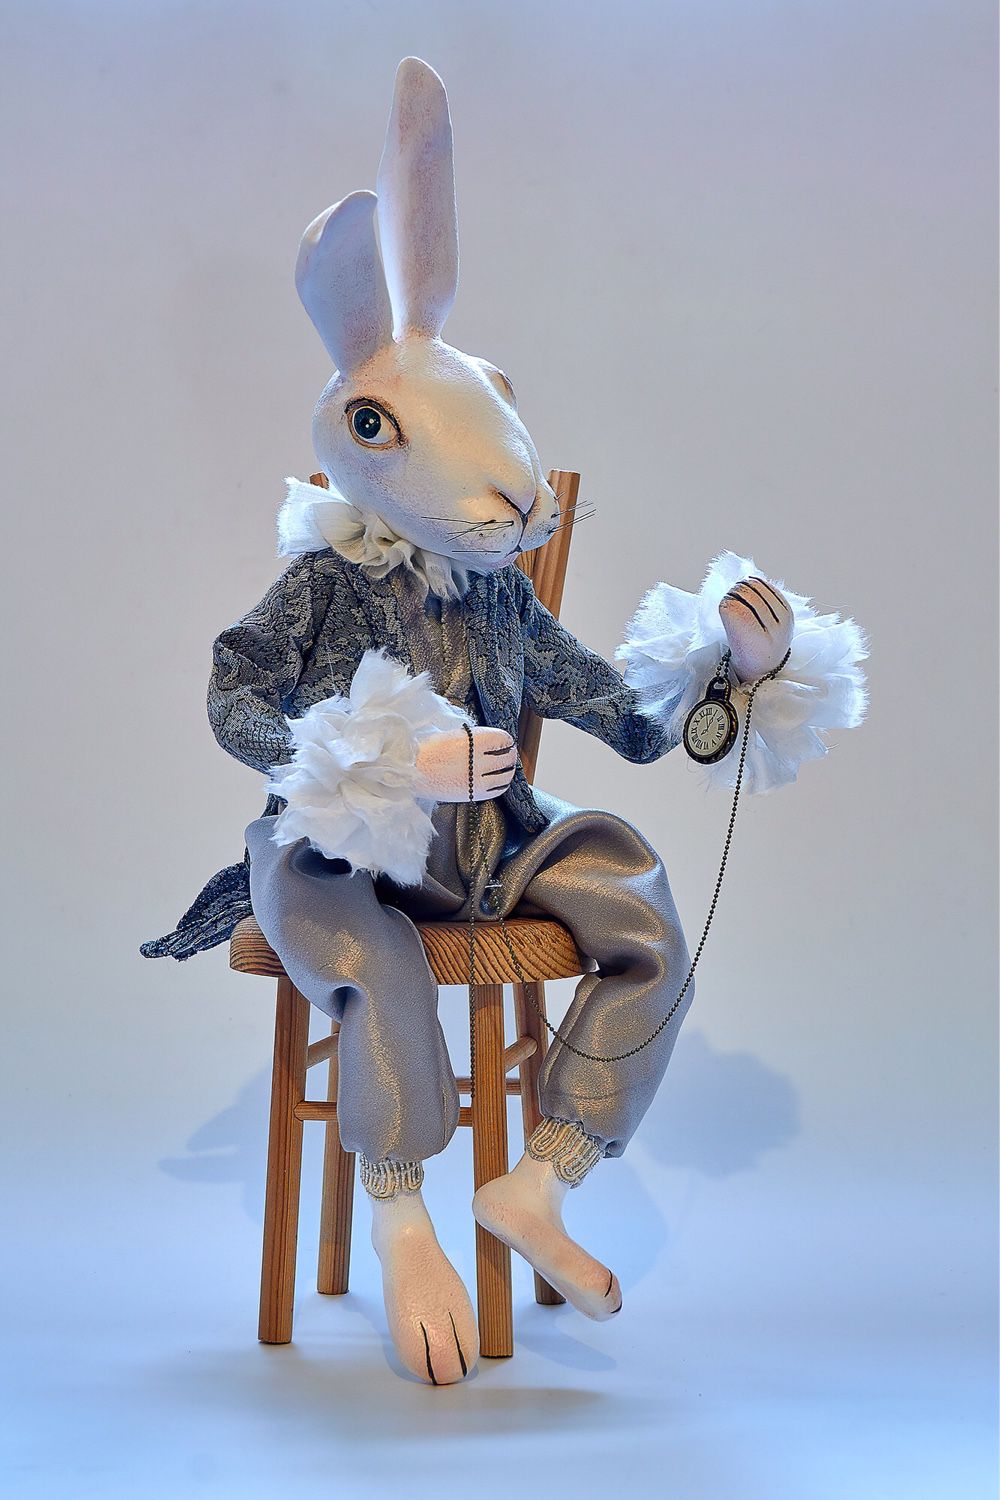 Rabbit doll. Белый кролик Алиса в стране чудес. Белый кролик из Алисы в стране чудес. Куклы лайфмастер. Игрушки текстильные Шляпник , белый кролик ,Алиса.